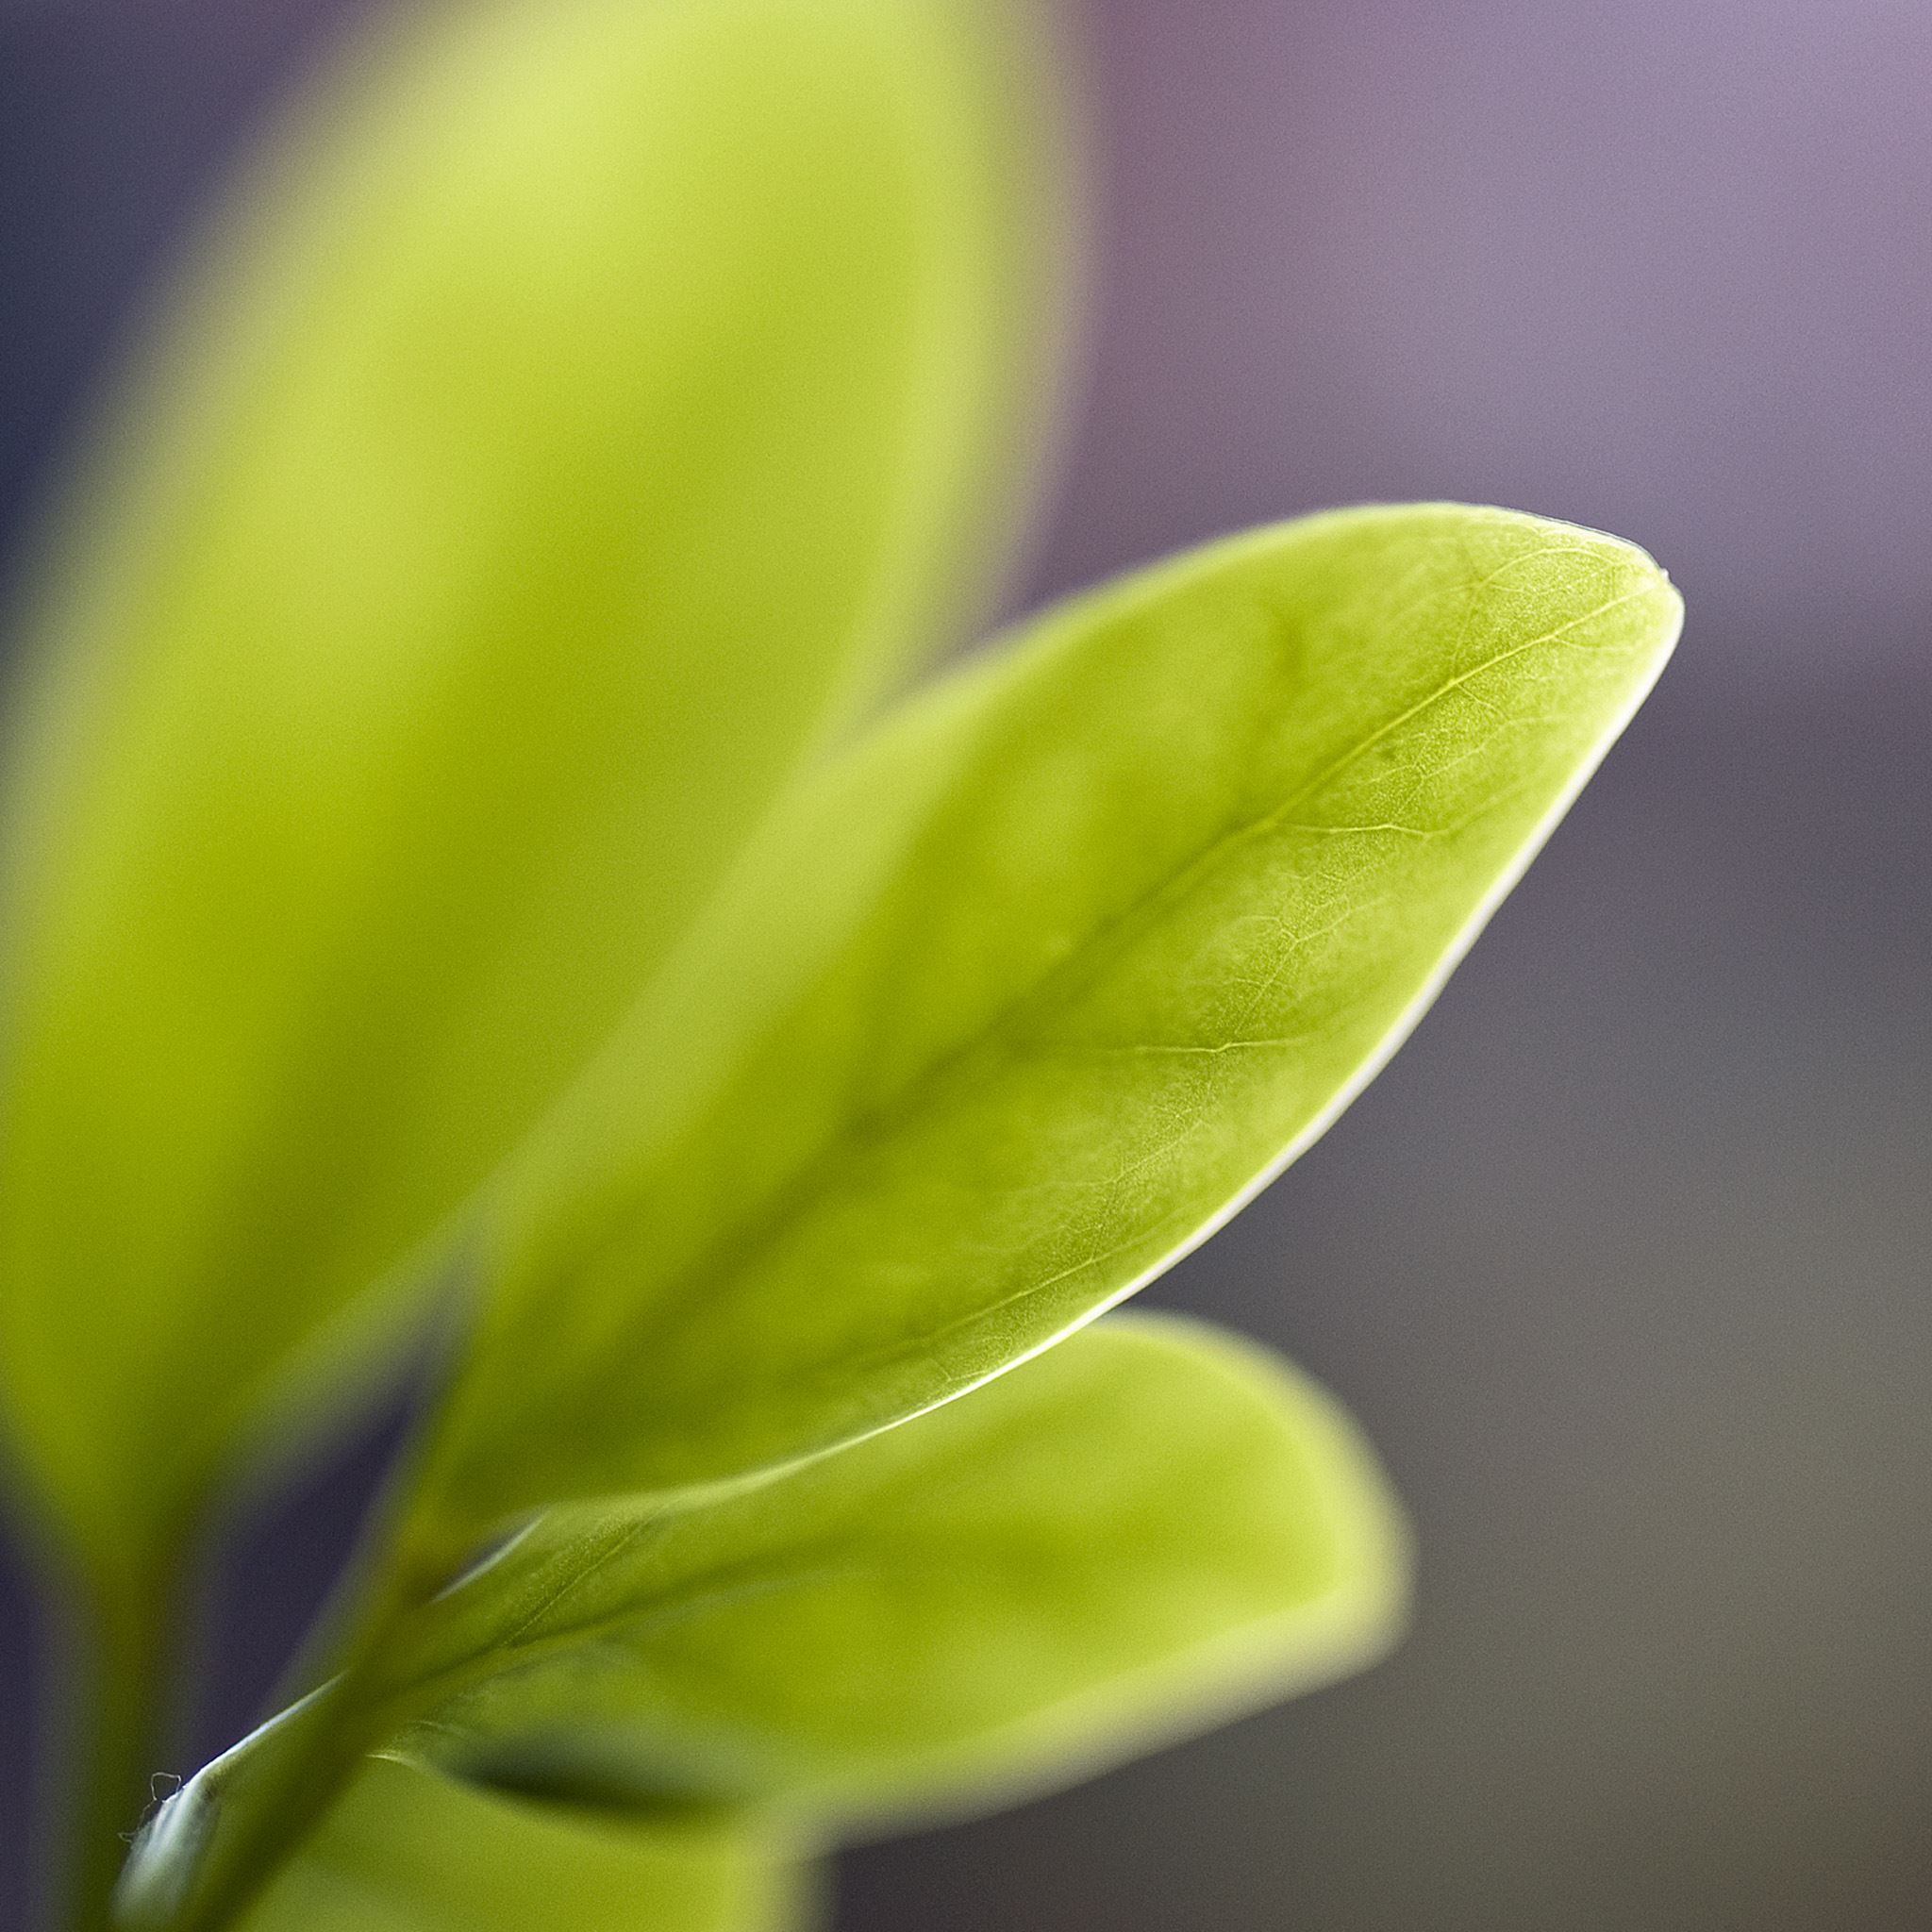 Нежные листья 2. Нежные листики. Leaf Bud. Фон серый блики и листья зеленые. Herb macro.